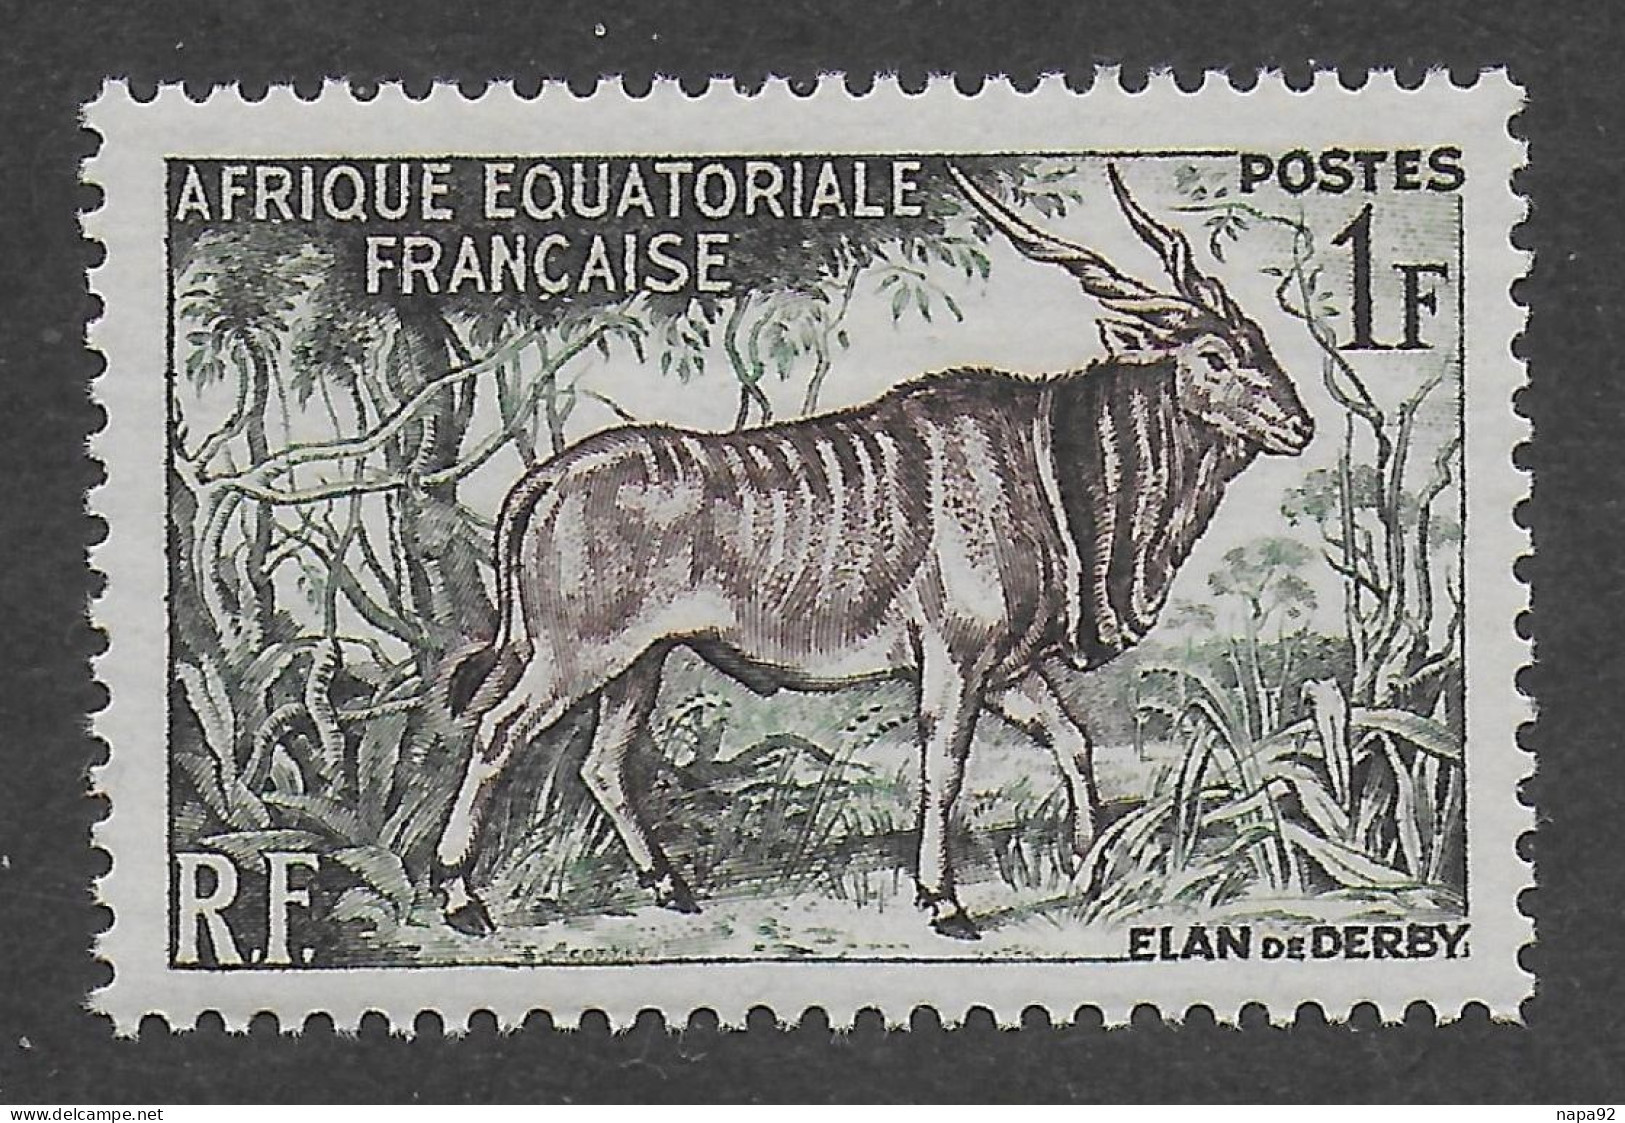 AFRIQUE EQUATORIALE FRANCAISE - AEF - A.E.F. - 1957 - YT 238** - MNH - Ungebraucht